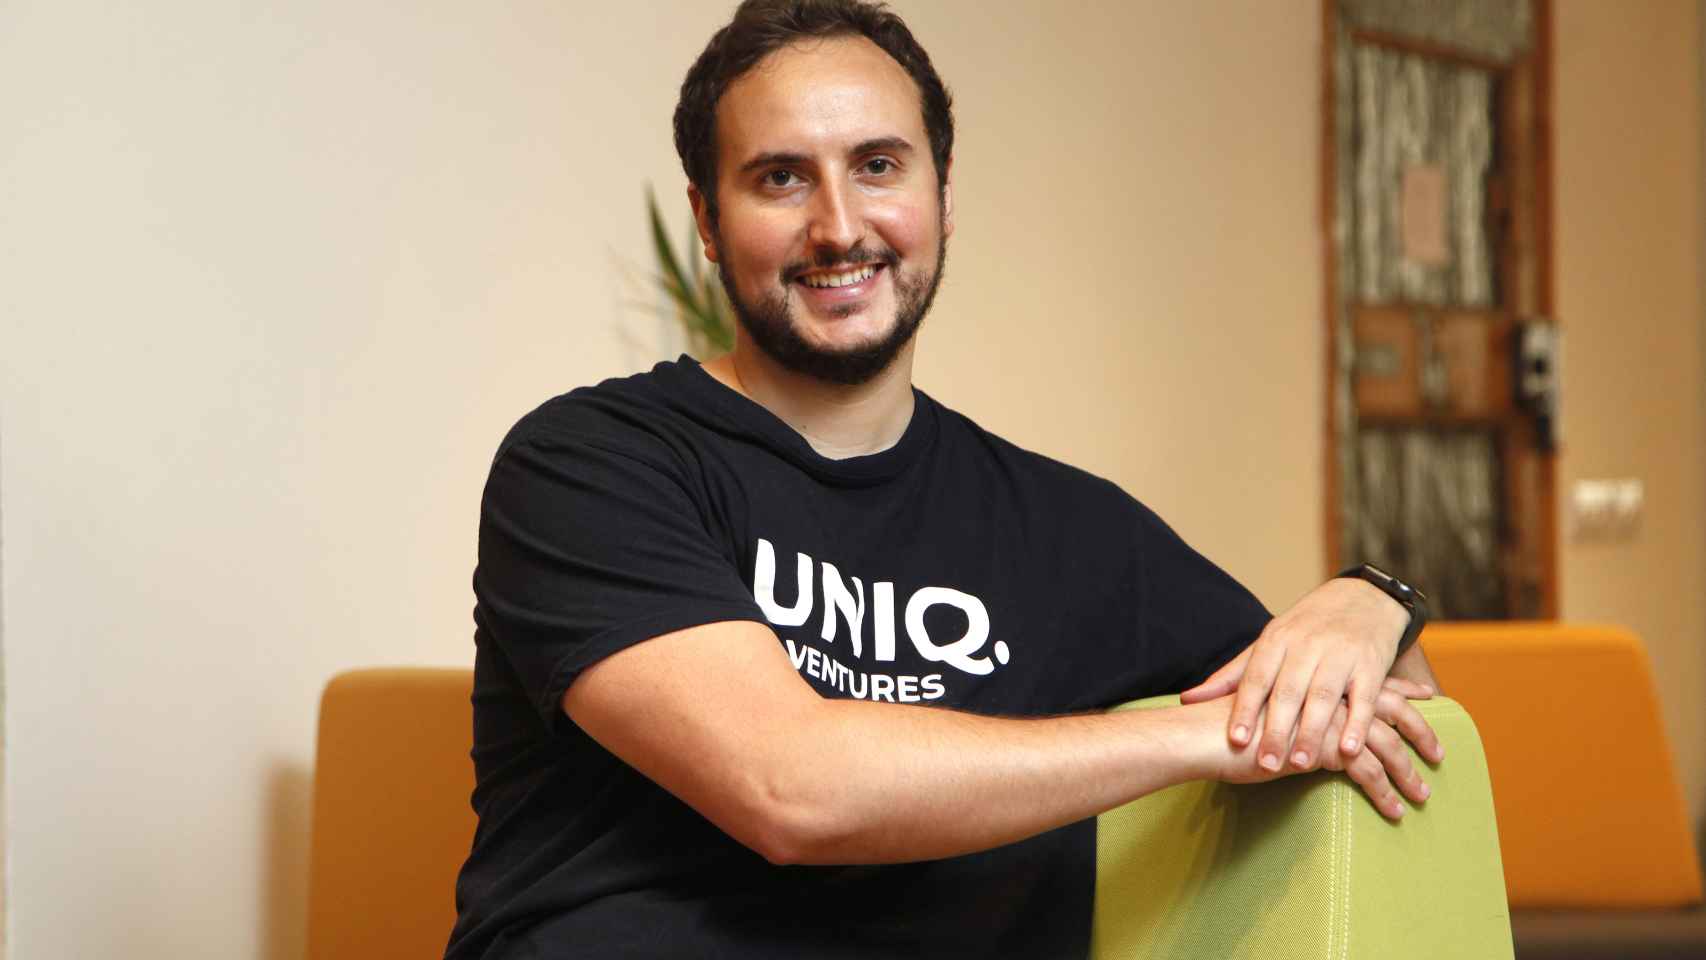 André Caçador es el creador y fundador de Uniq Ventures.